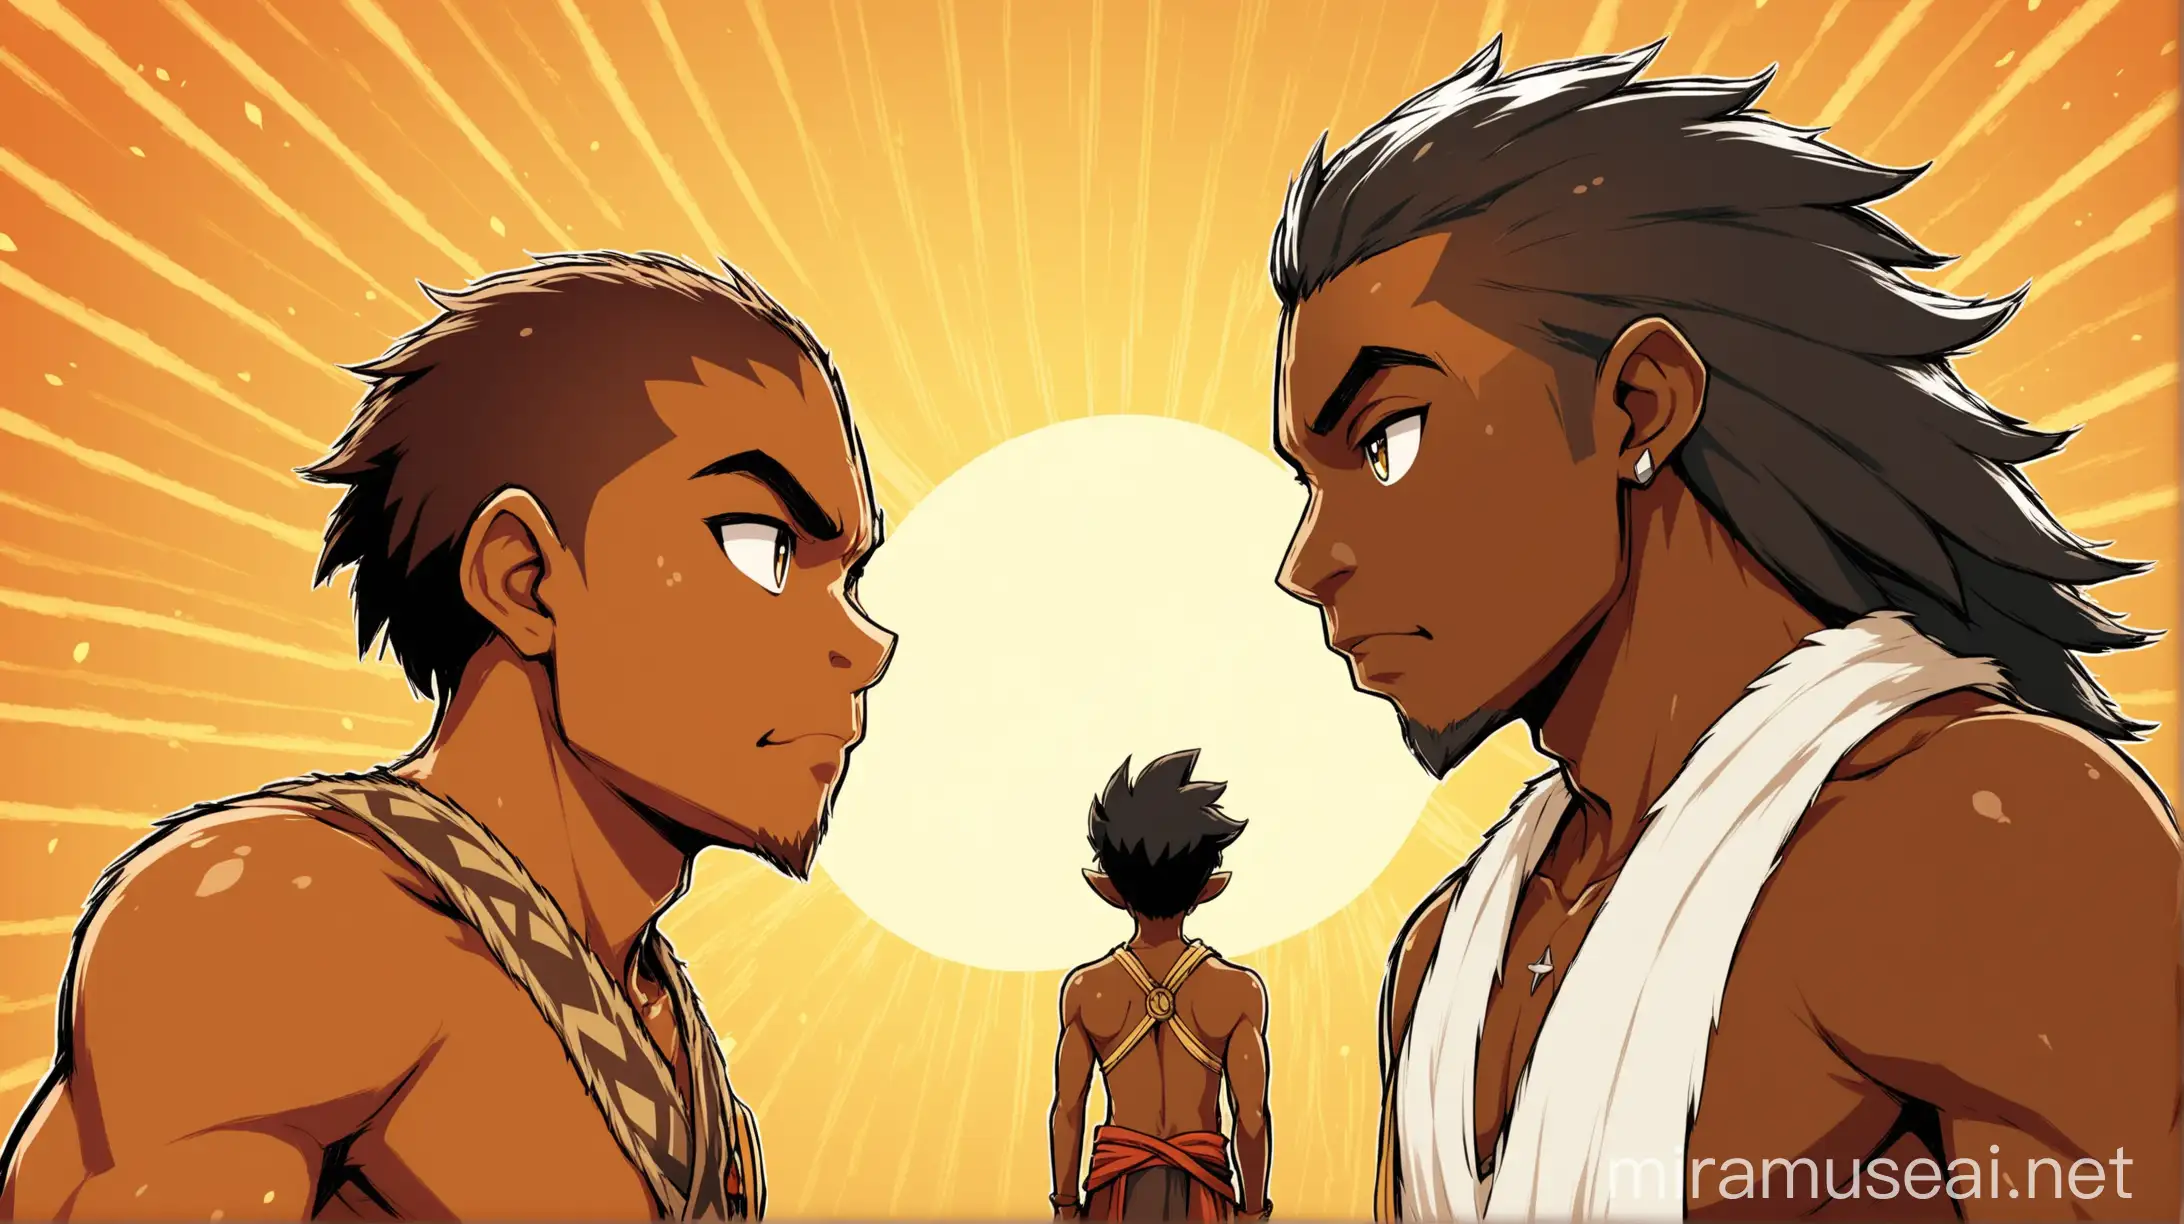 2 personnages face à face dont 1 est l'homme de "C:\Users\utilisateur\Downloads\171434333560757emg8ol.png". Ce sont des personnages jeune adulte mélanésiens. Ils sont chacun déterminé à gagner cette partie.  L'illustration est de style wakfu.